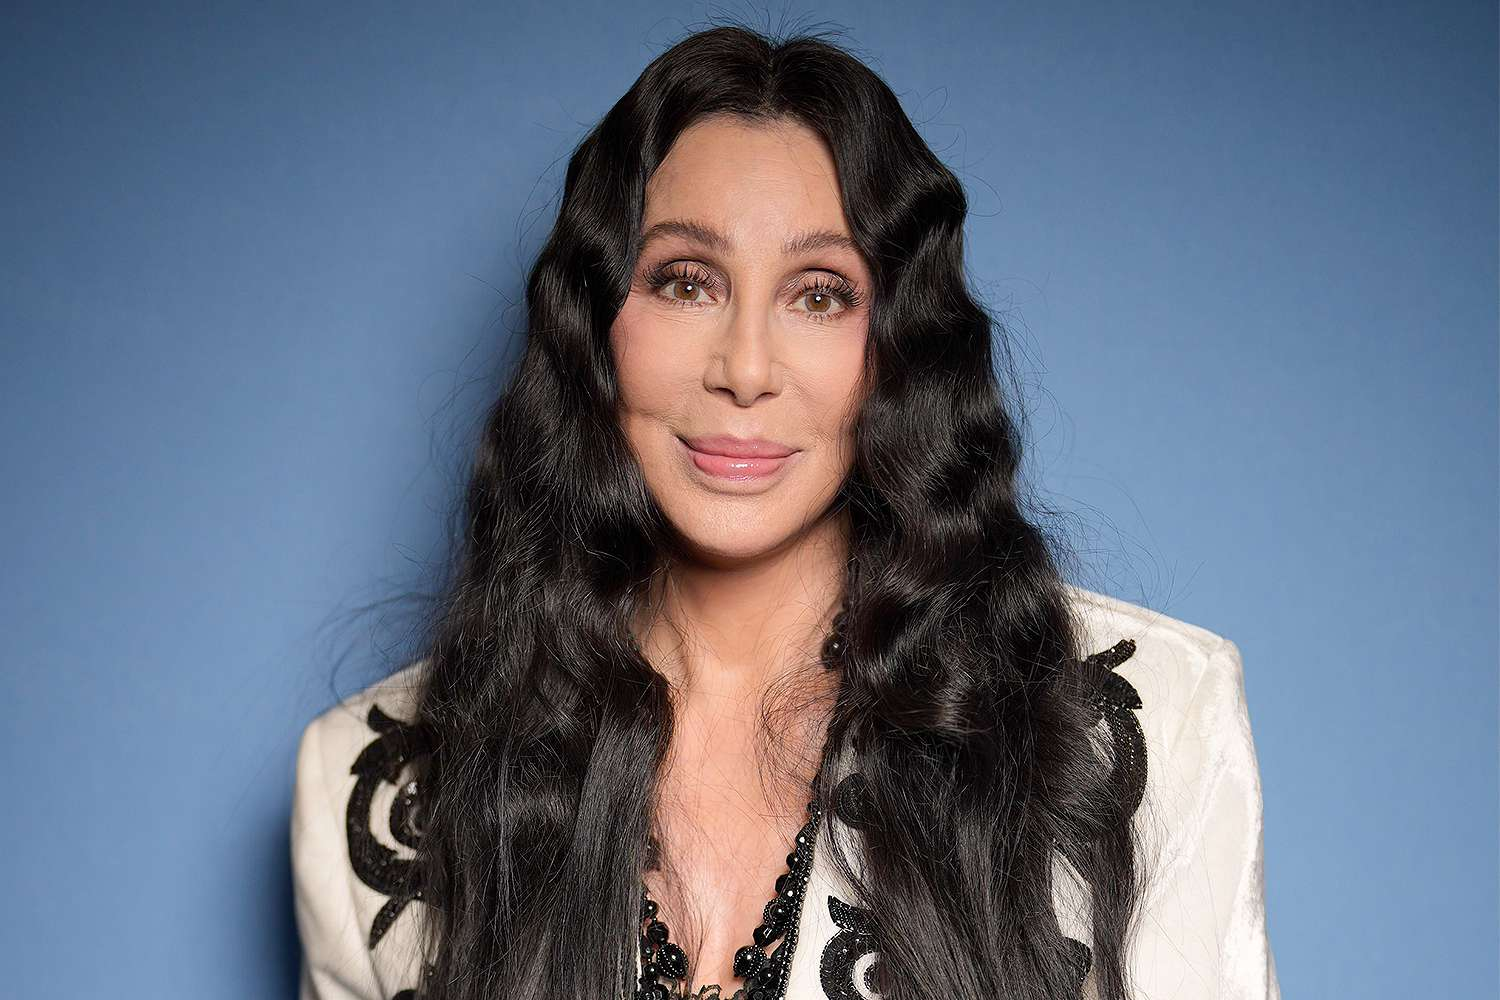 Cher, Genç Sevgili Tercihinin Nedenini Açıkladı: "Yaşıtlarım Artık Öldü"